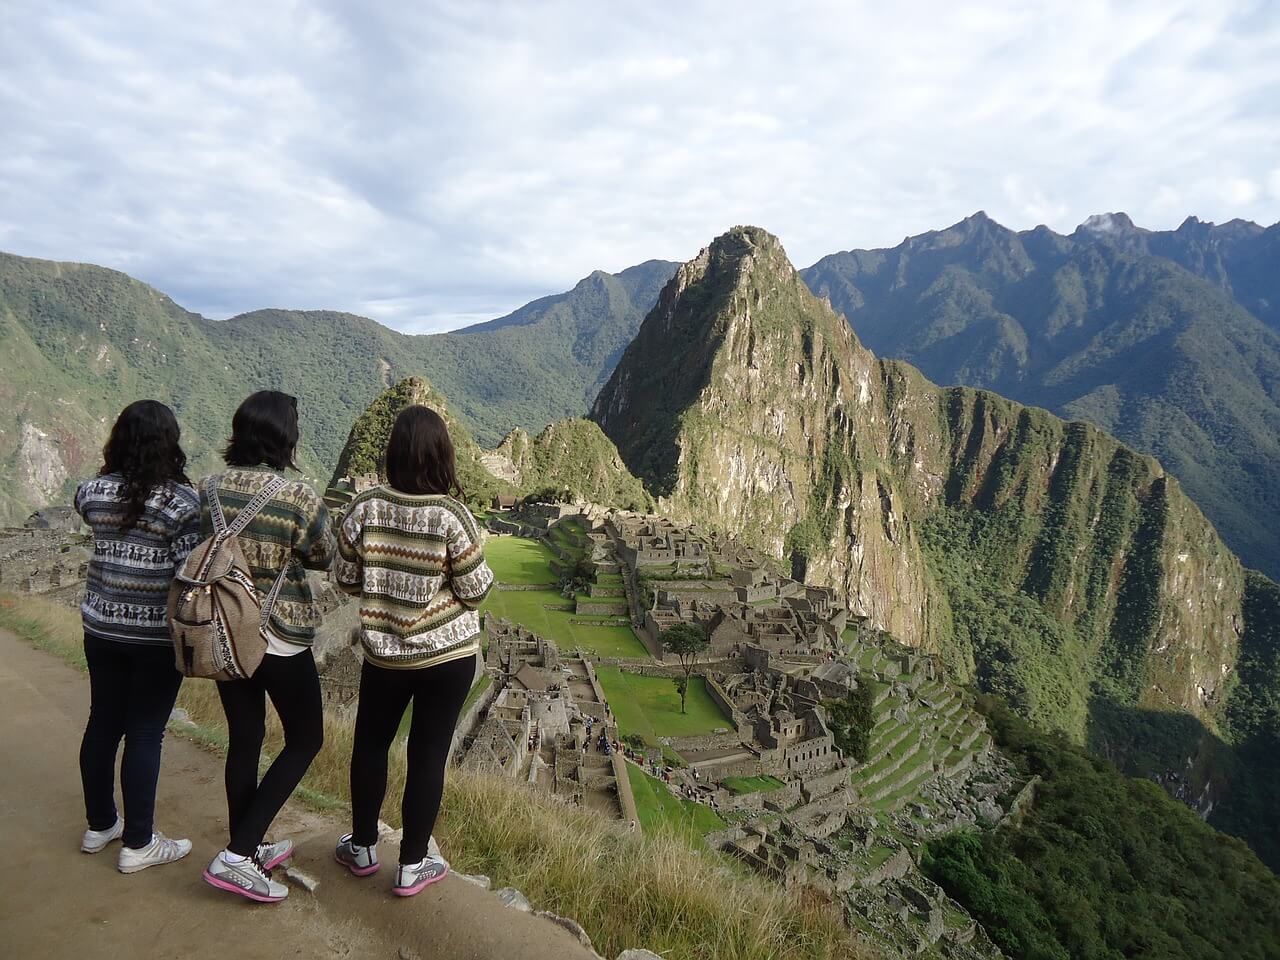 Amigas de viaje en Machu Picchu